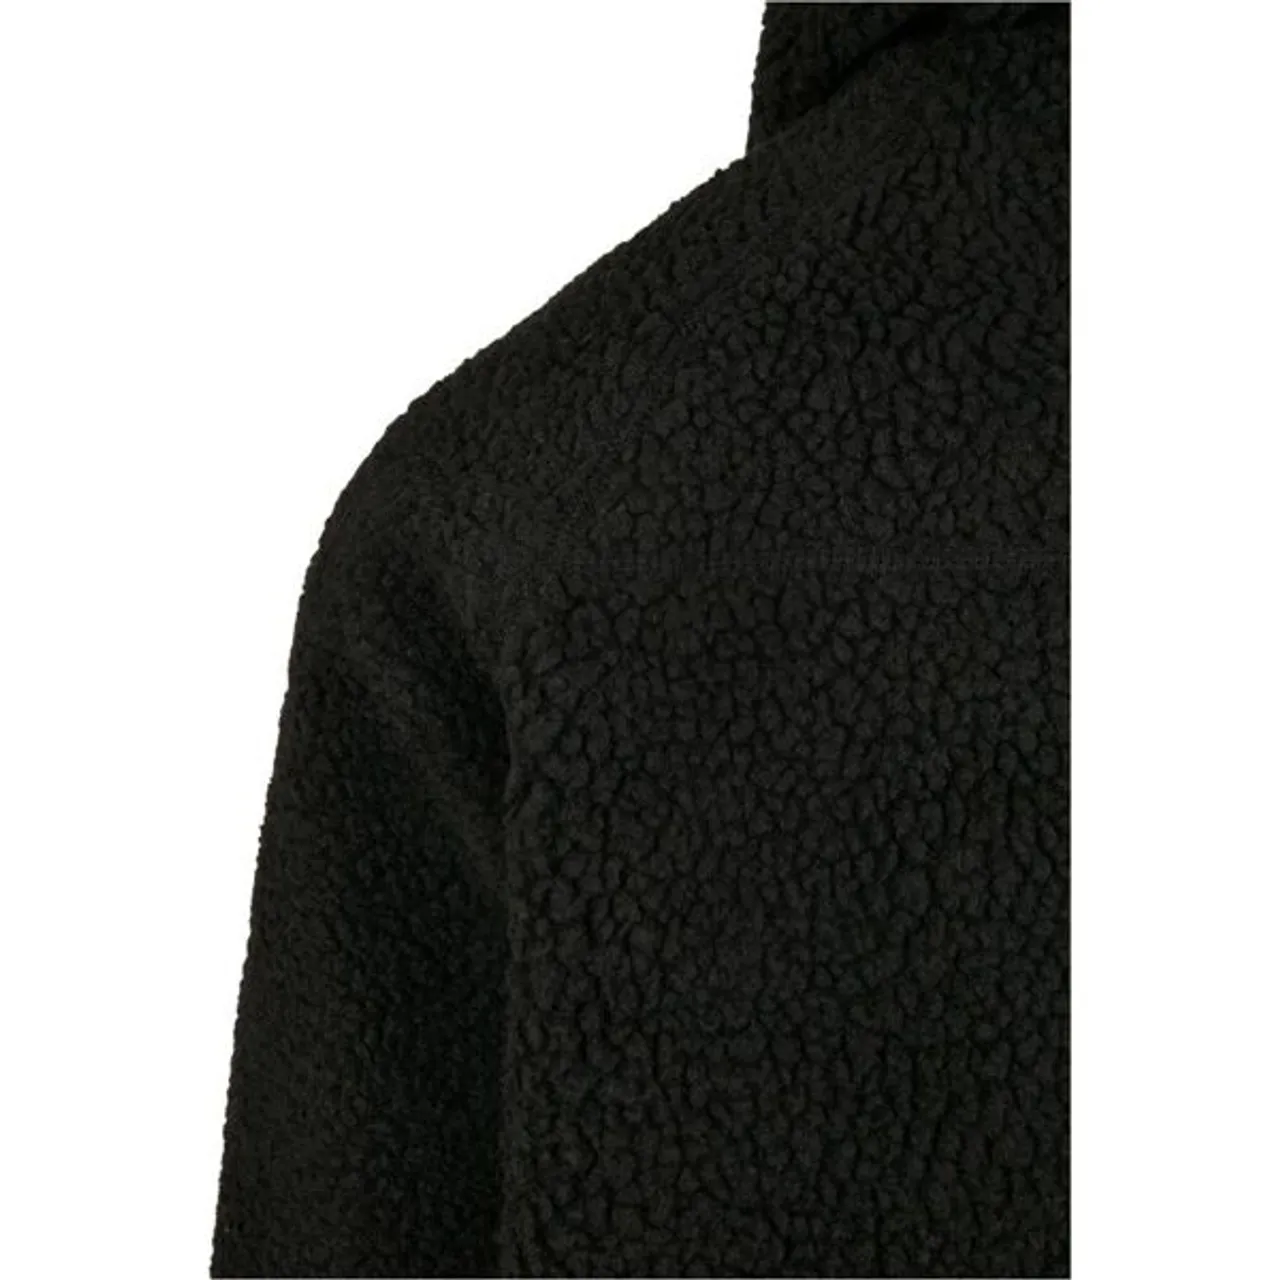 Anorak BRANDIT "Brandit Herren Teddyfleece Worker Jacket" Gr. 7XL, schwarz (black) Herren Jacken Regenjacken